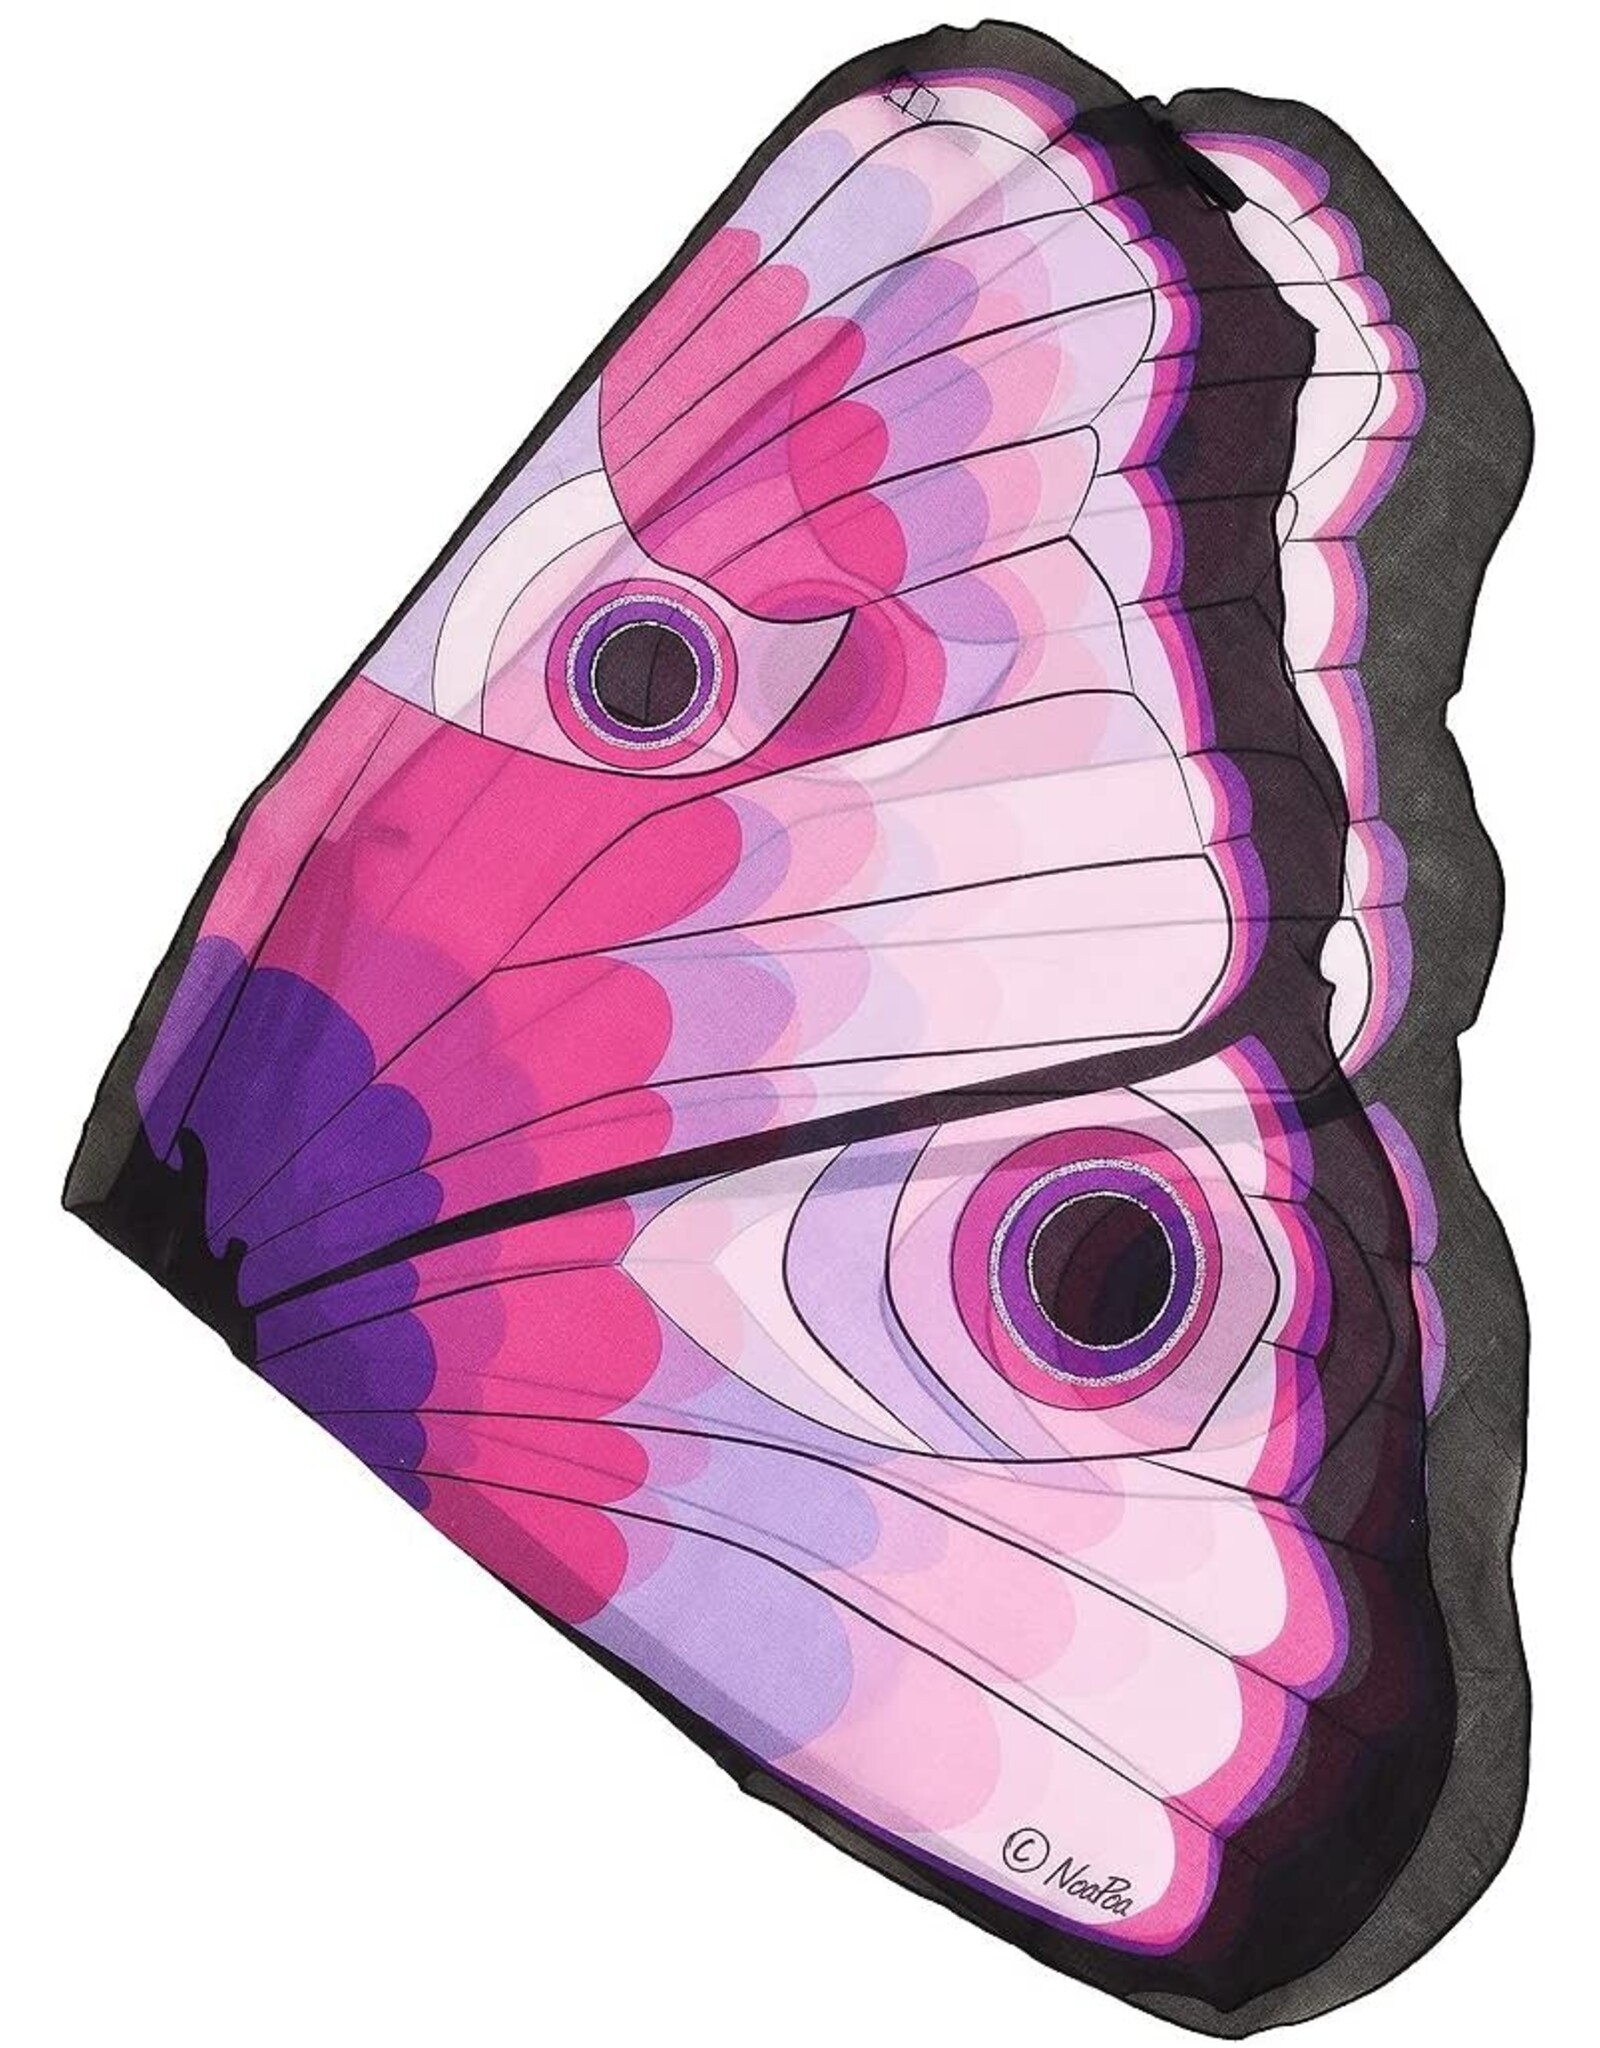 Douglas Douglas Cuddle Toys Pink Butterfly Eye Wings